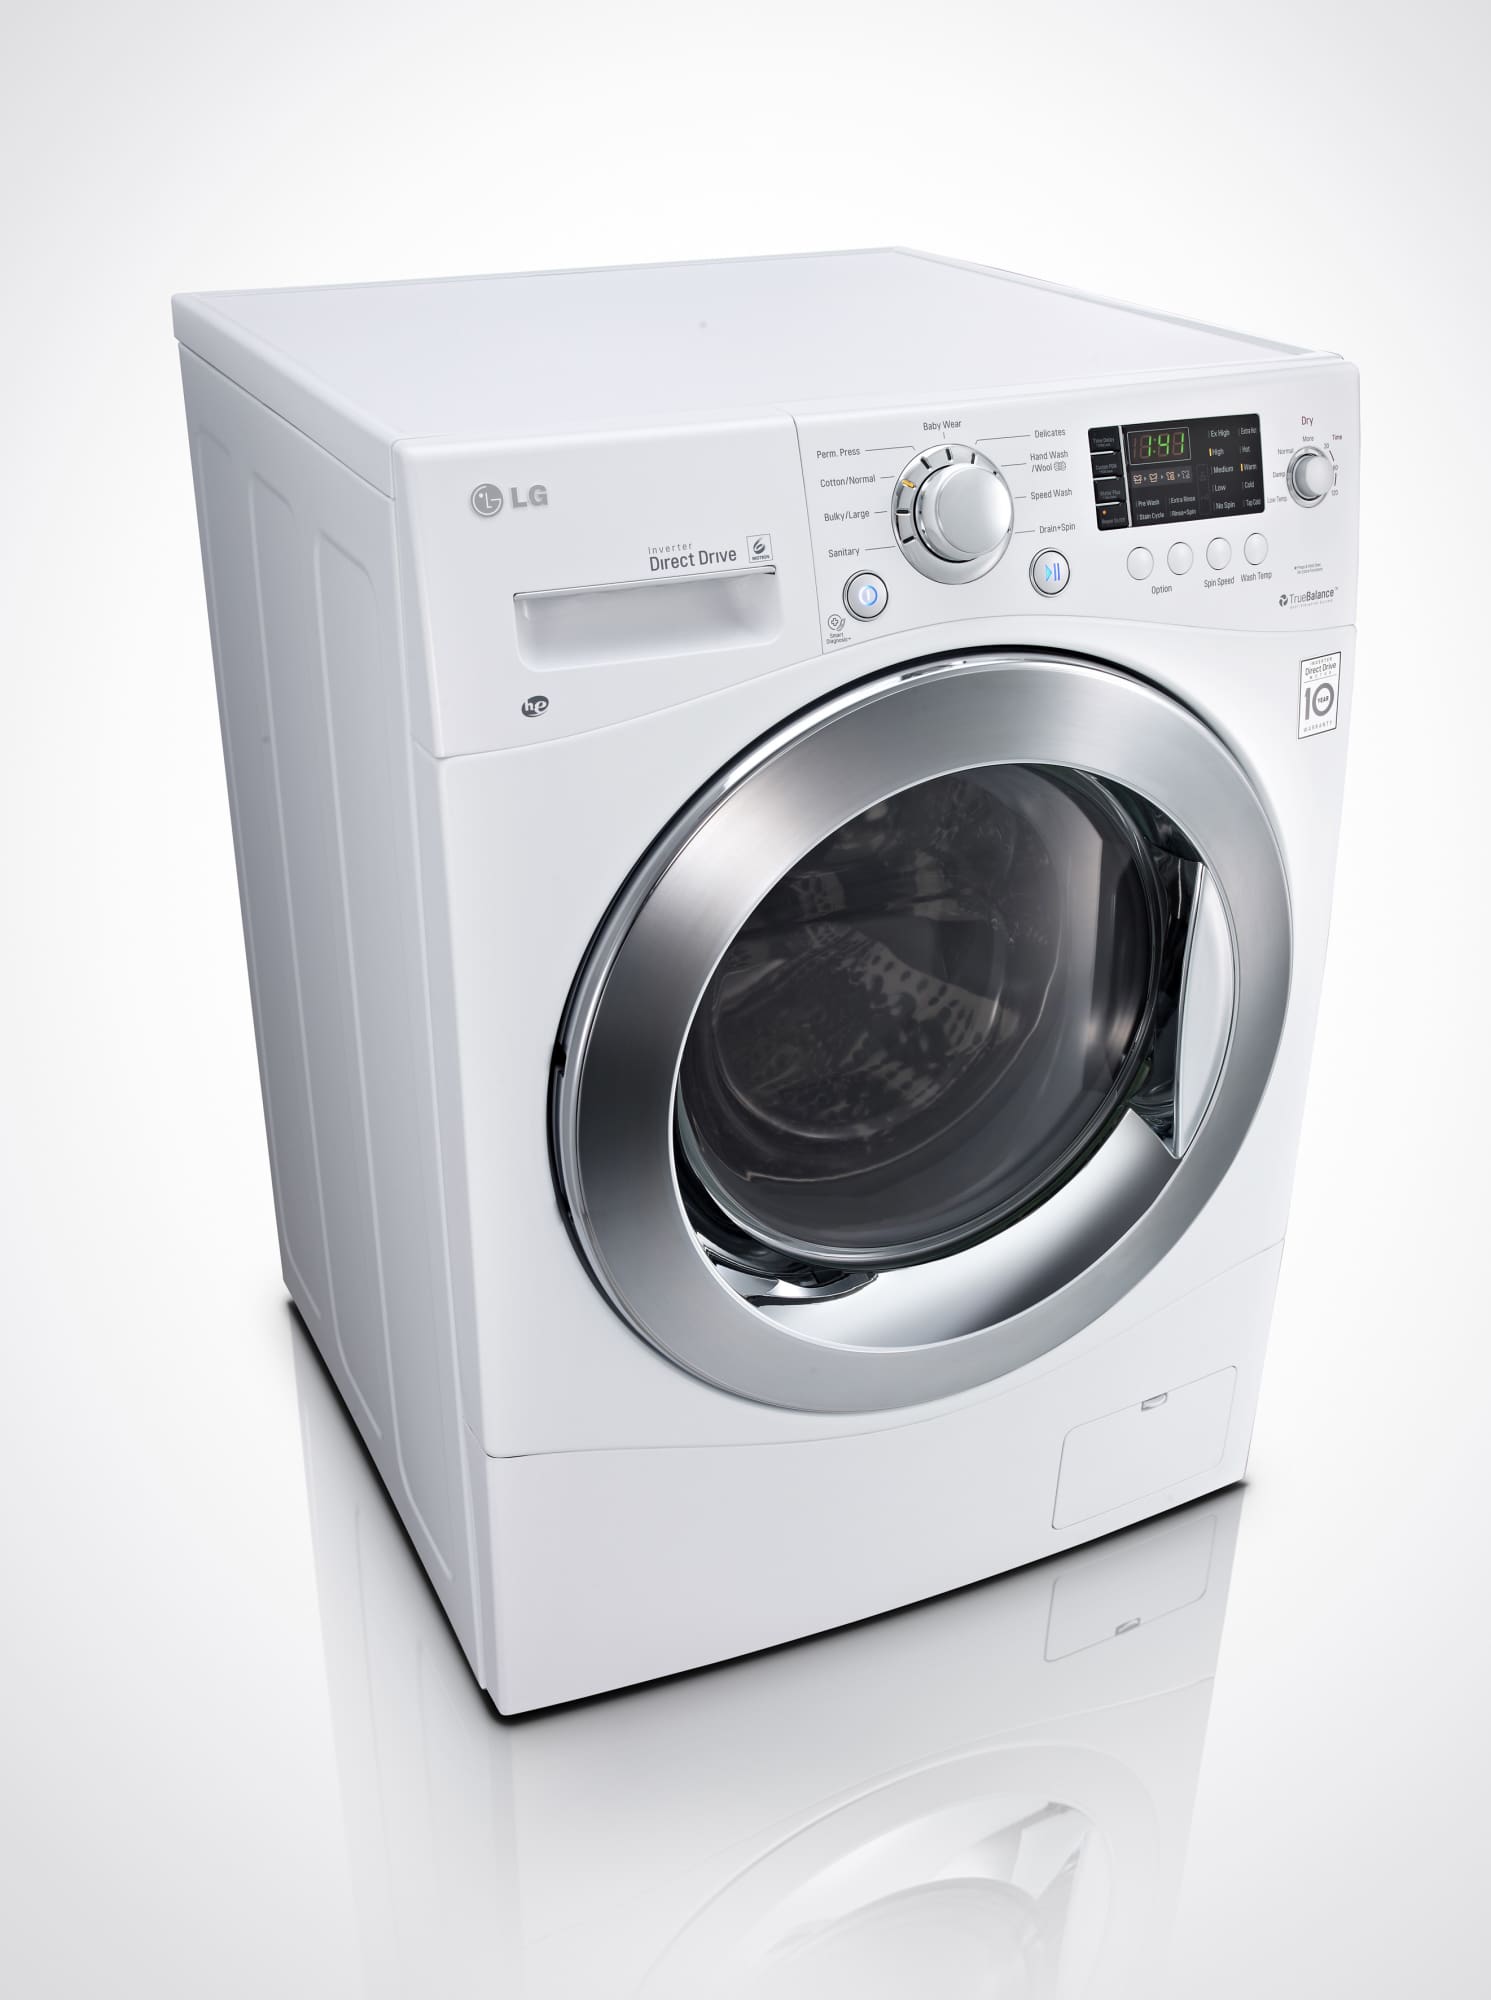 LG WM3477HW 24 Inch 2.3 cu. ft. Electric Washer/Dryer Combo, 9 Wash and 24 Inch Ventless Electric Washer Dryer Combo